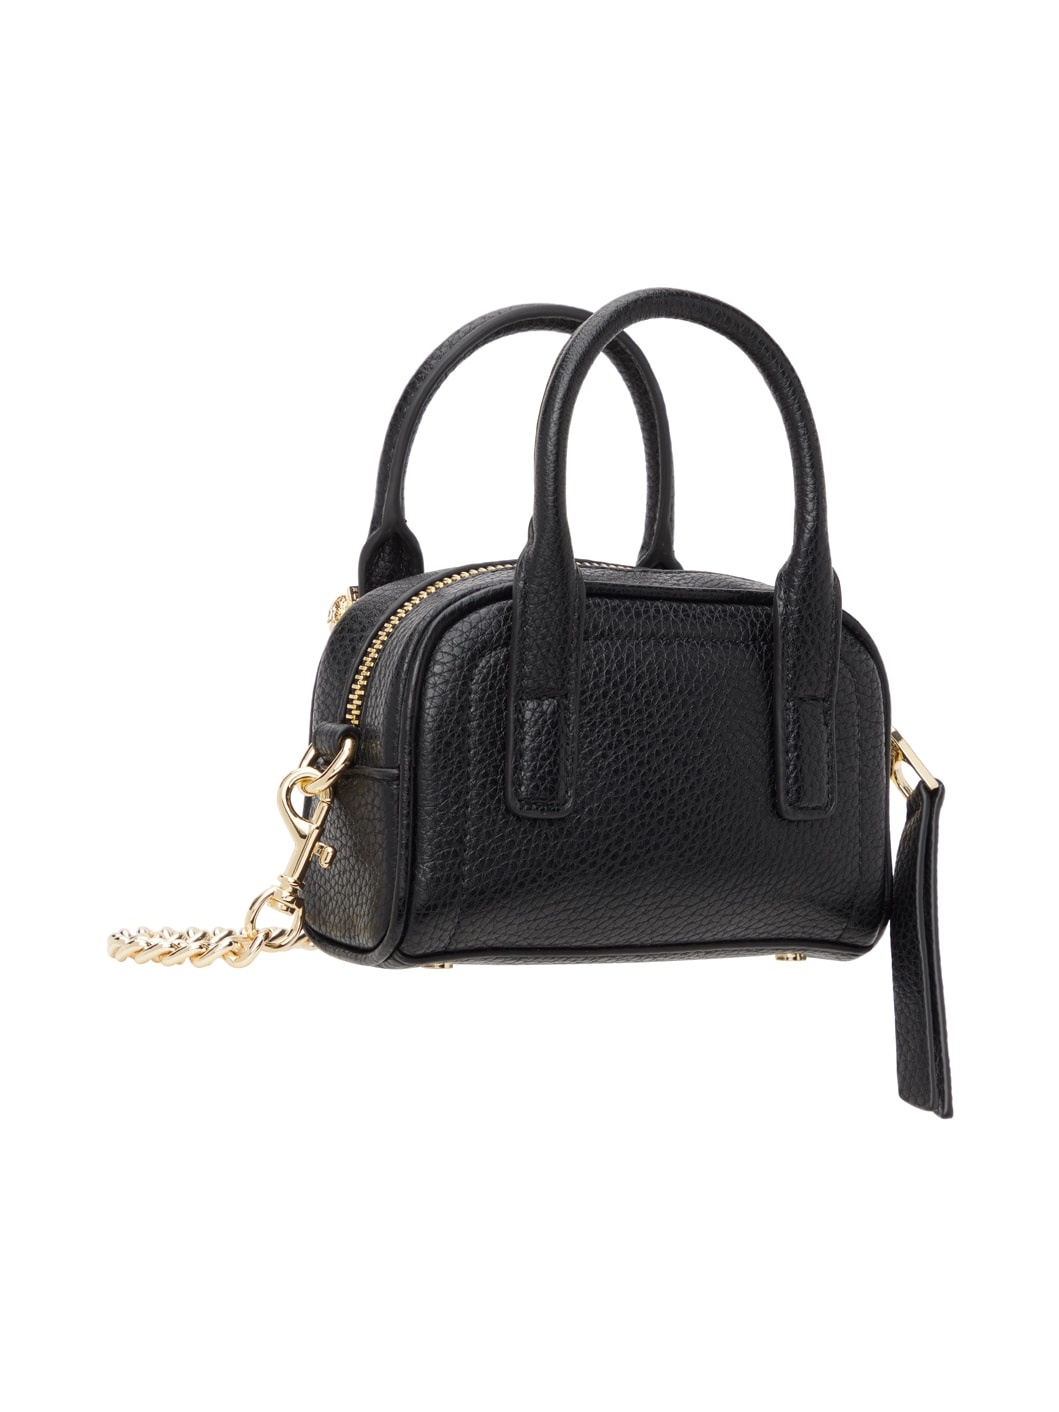 Black Curb Chain Top Handle Bag - 3